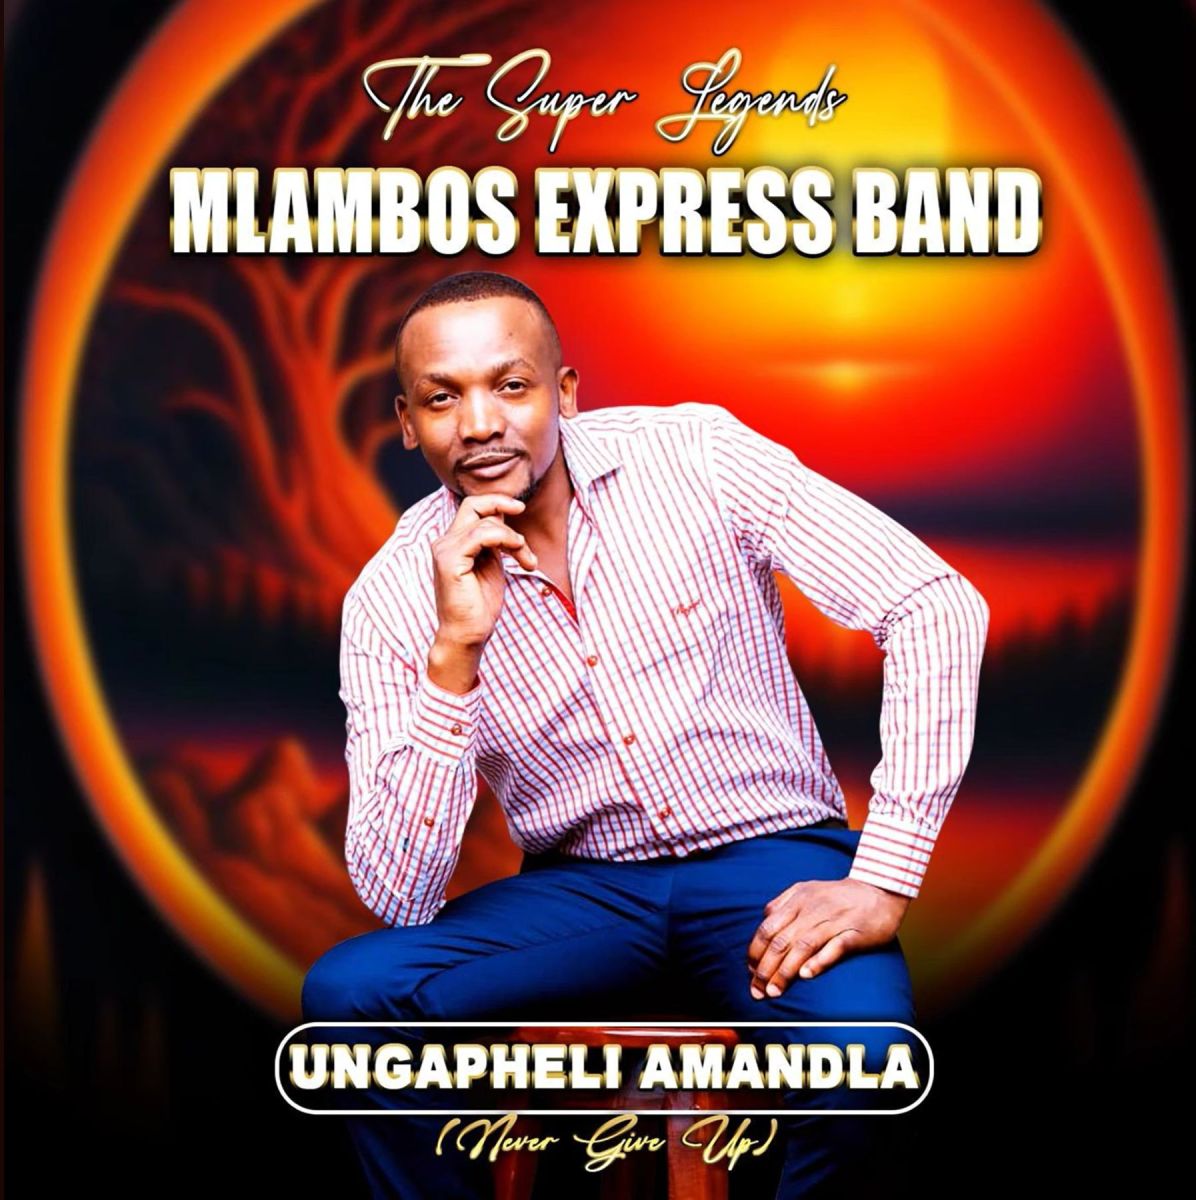 Mlambos Express Band - Ungapheli Amandla (Never Give Up) Album 1